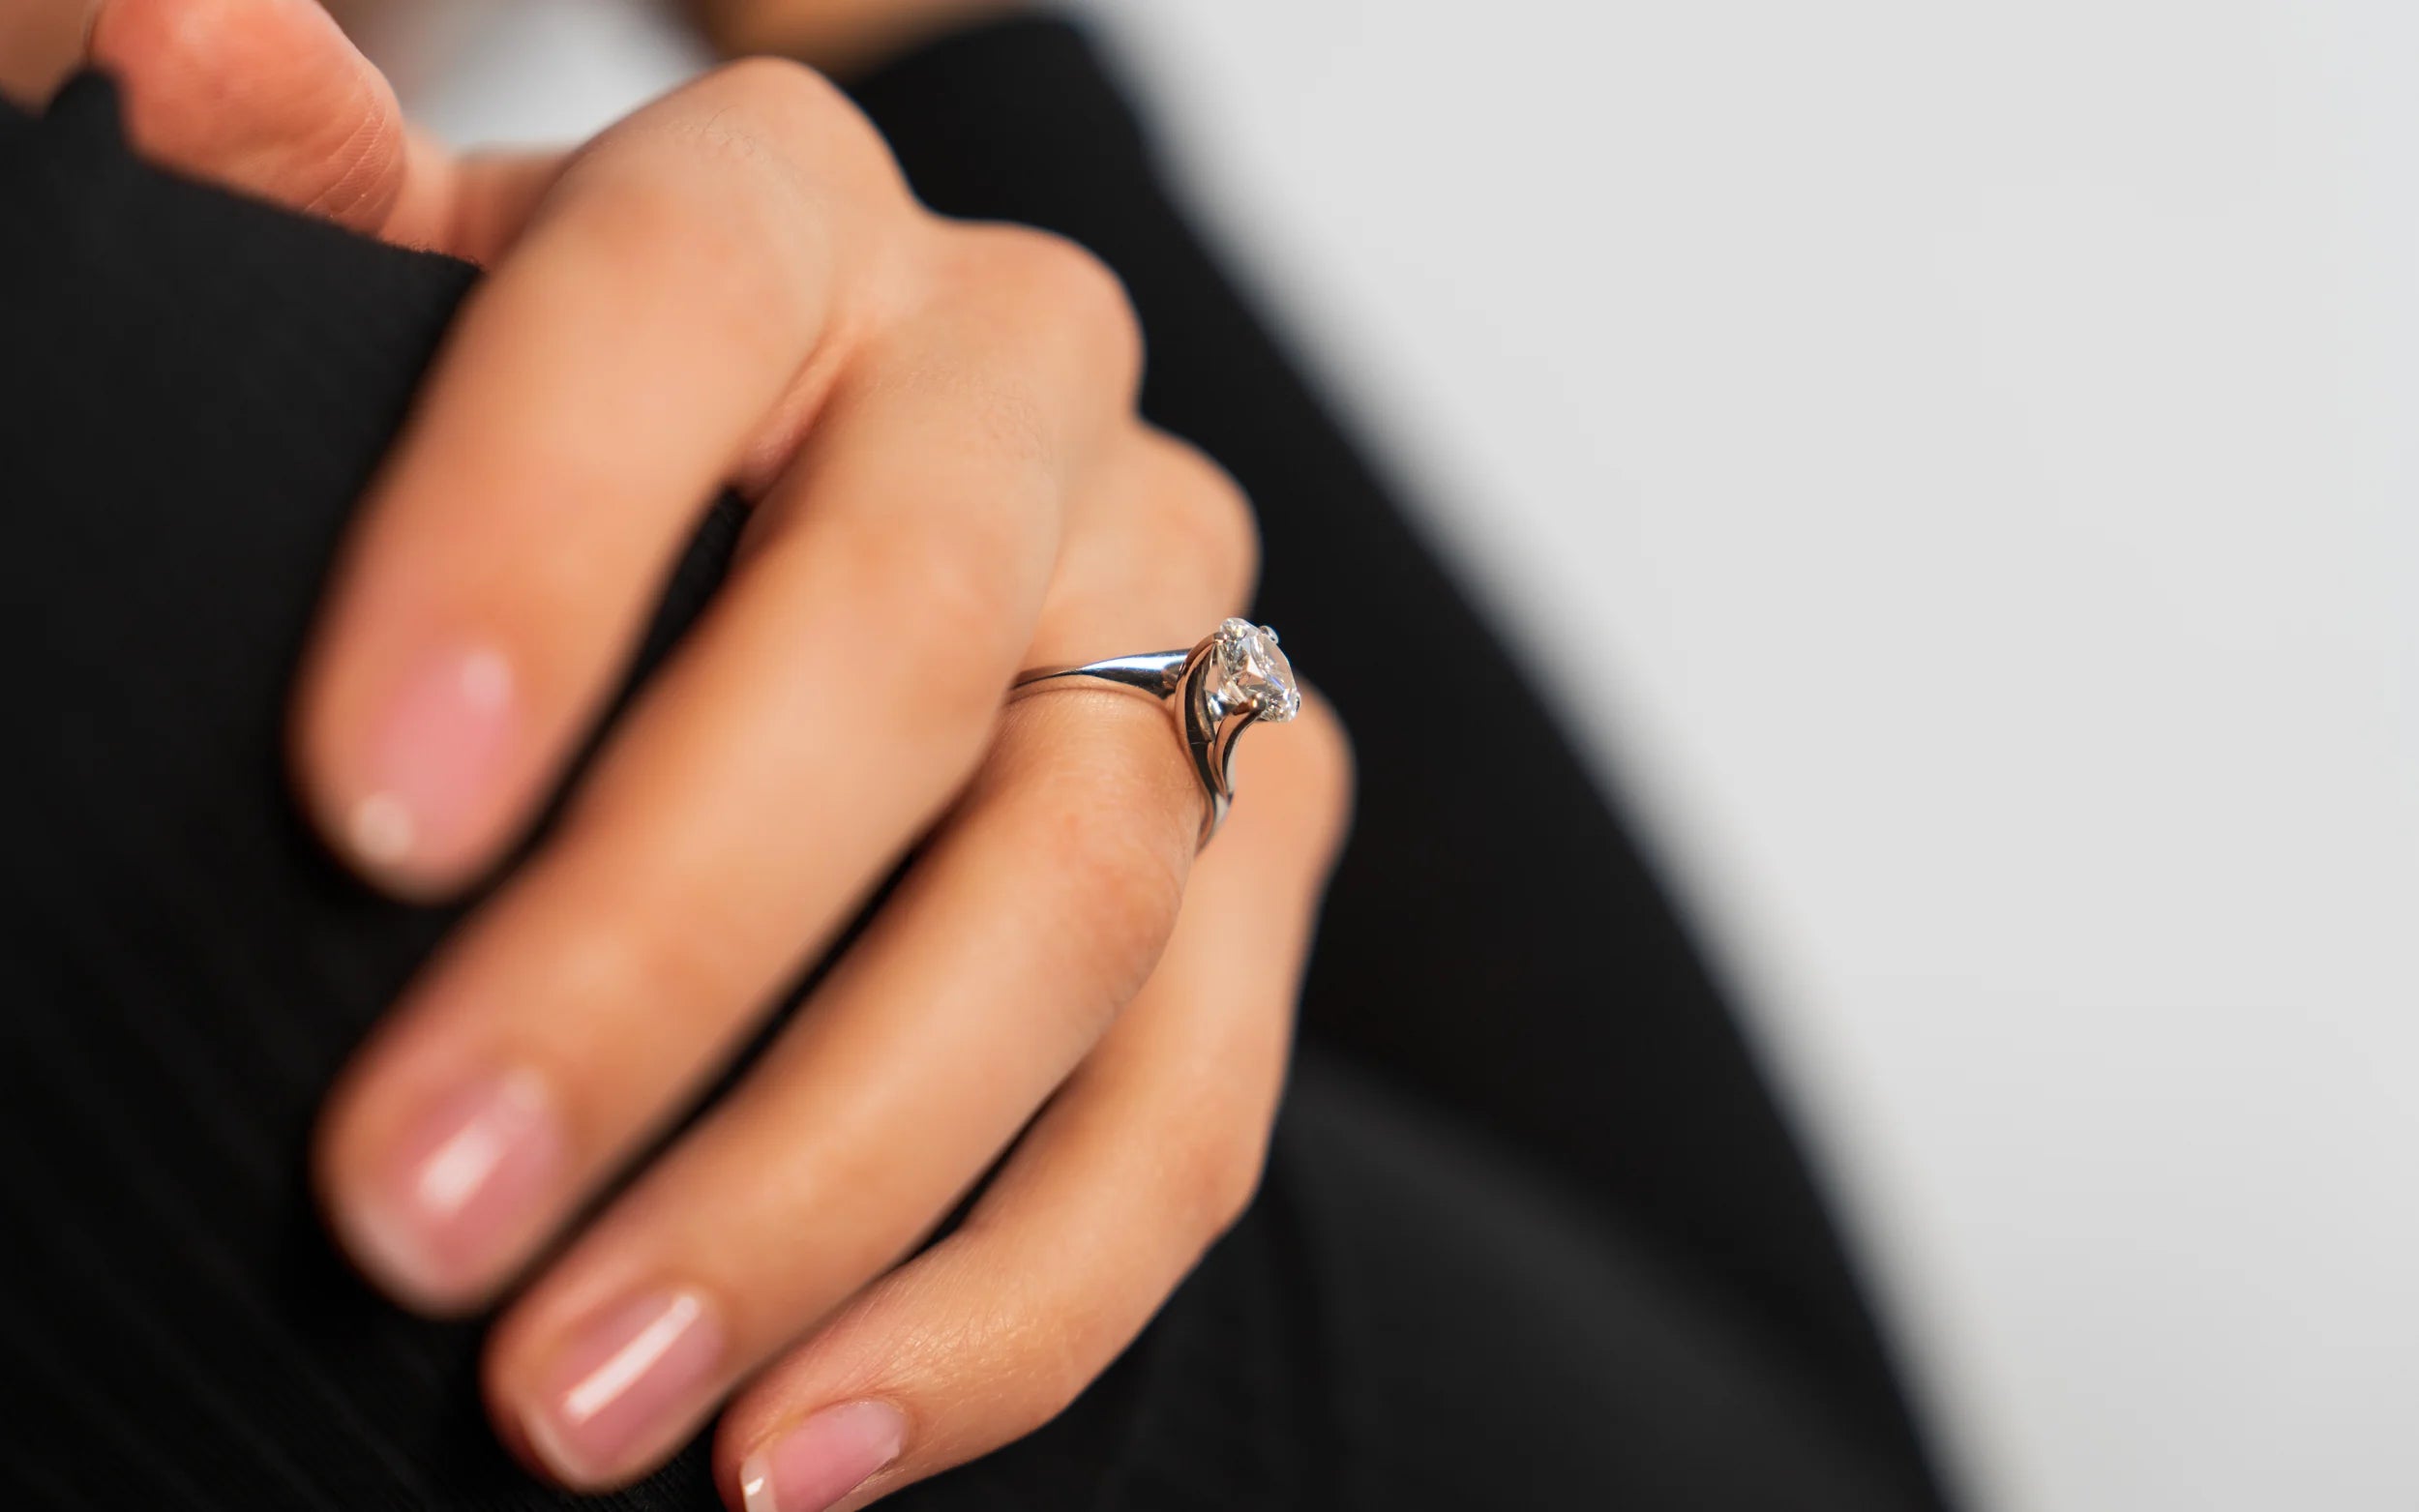 Frau trägt einen Verlobungsring aus Weißgold mit einem 1,75 Carat Brillant am Ringfinger